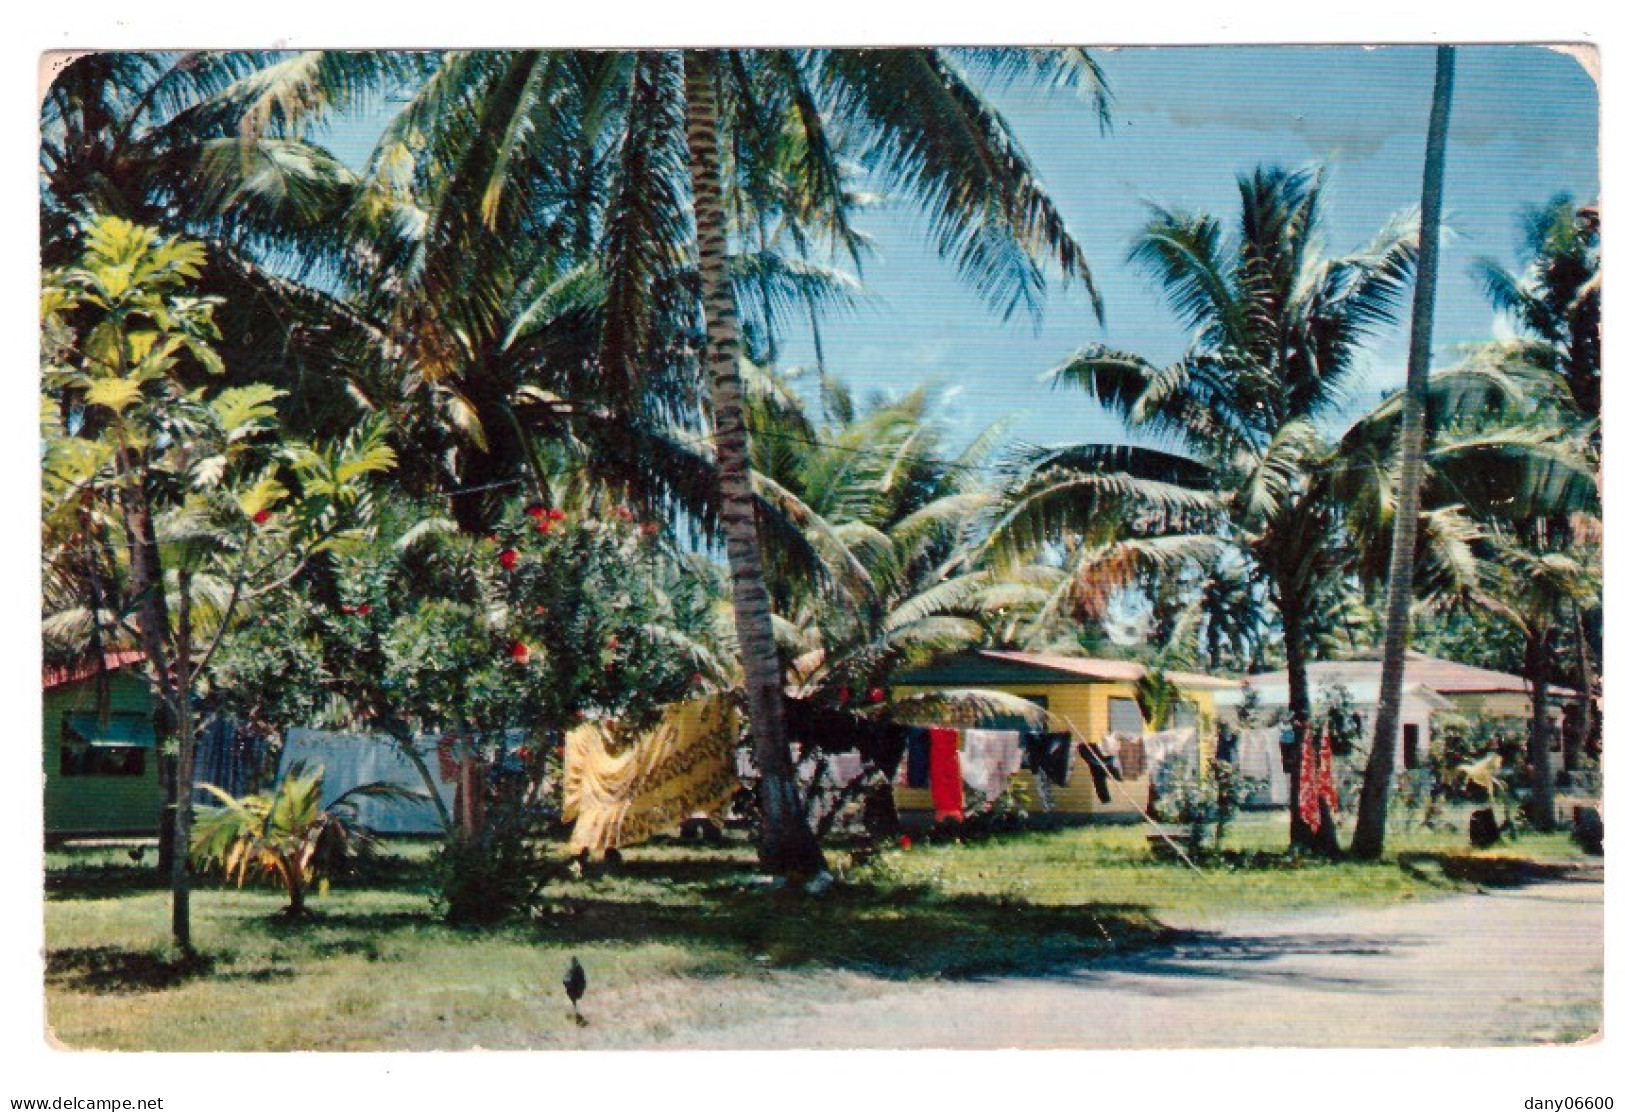 POLYNESIE FRANCAISE - Atoll De HAO - Village D'OTEPA (carte Photo) - Polynésie Française